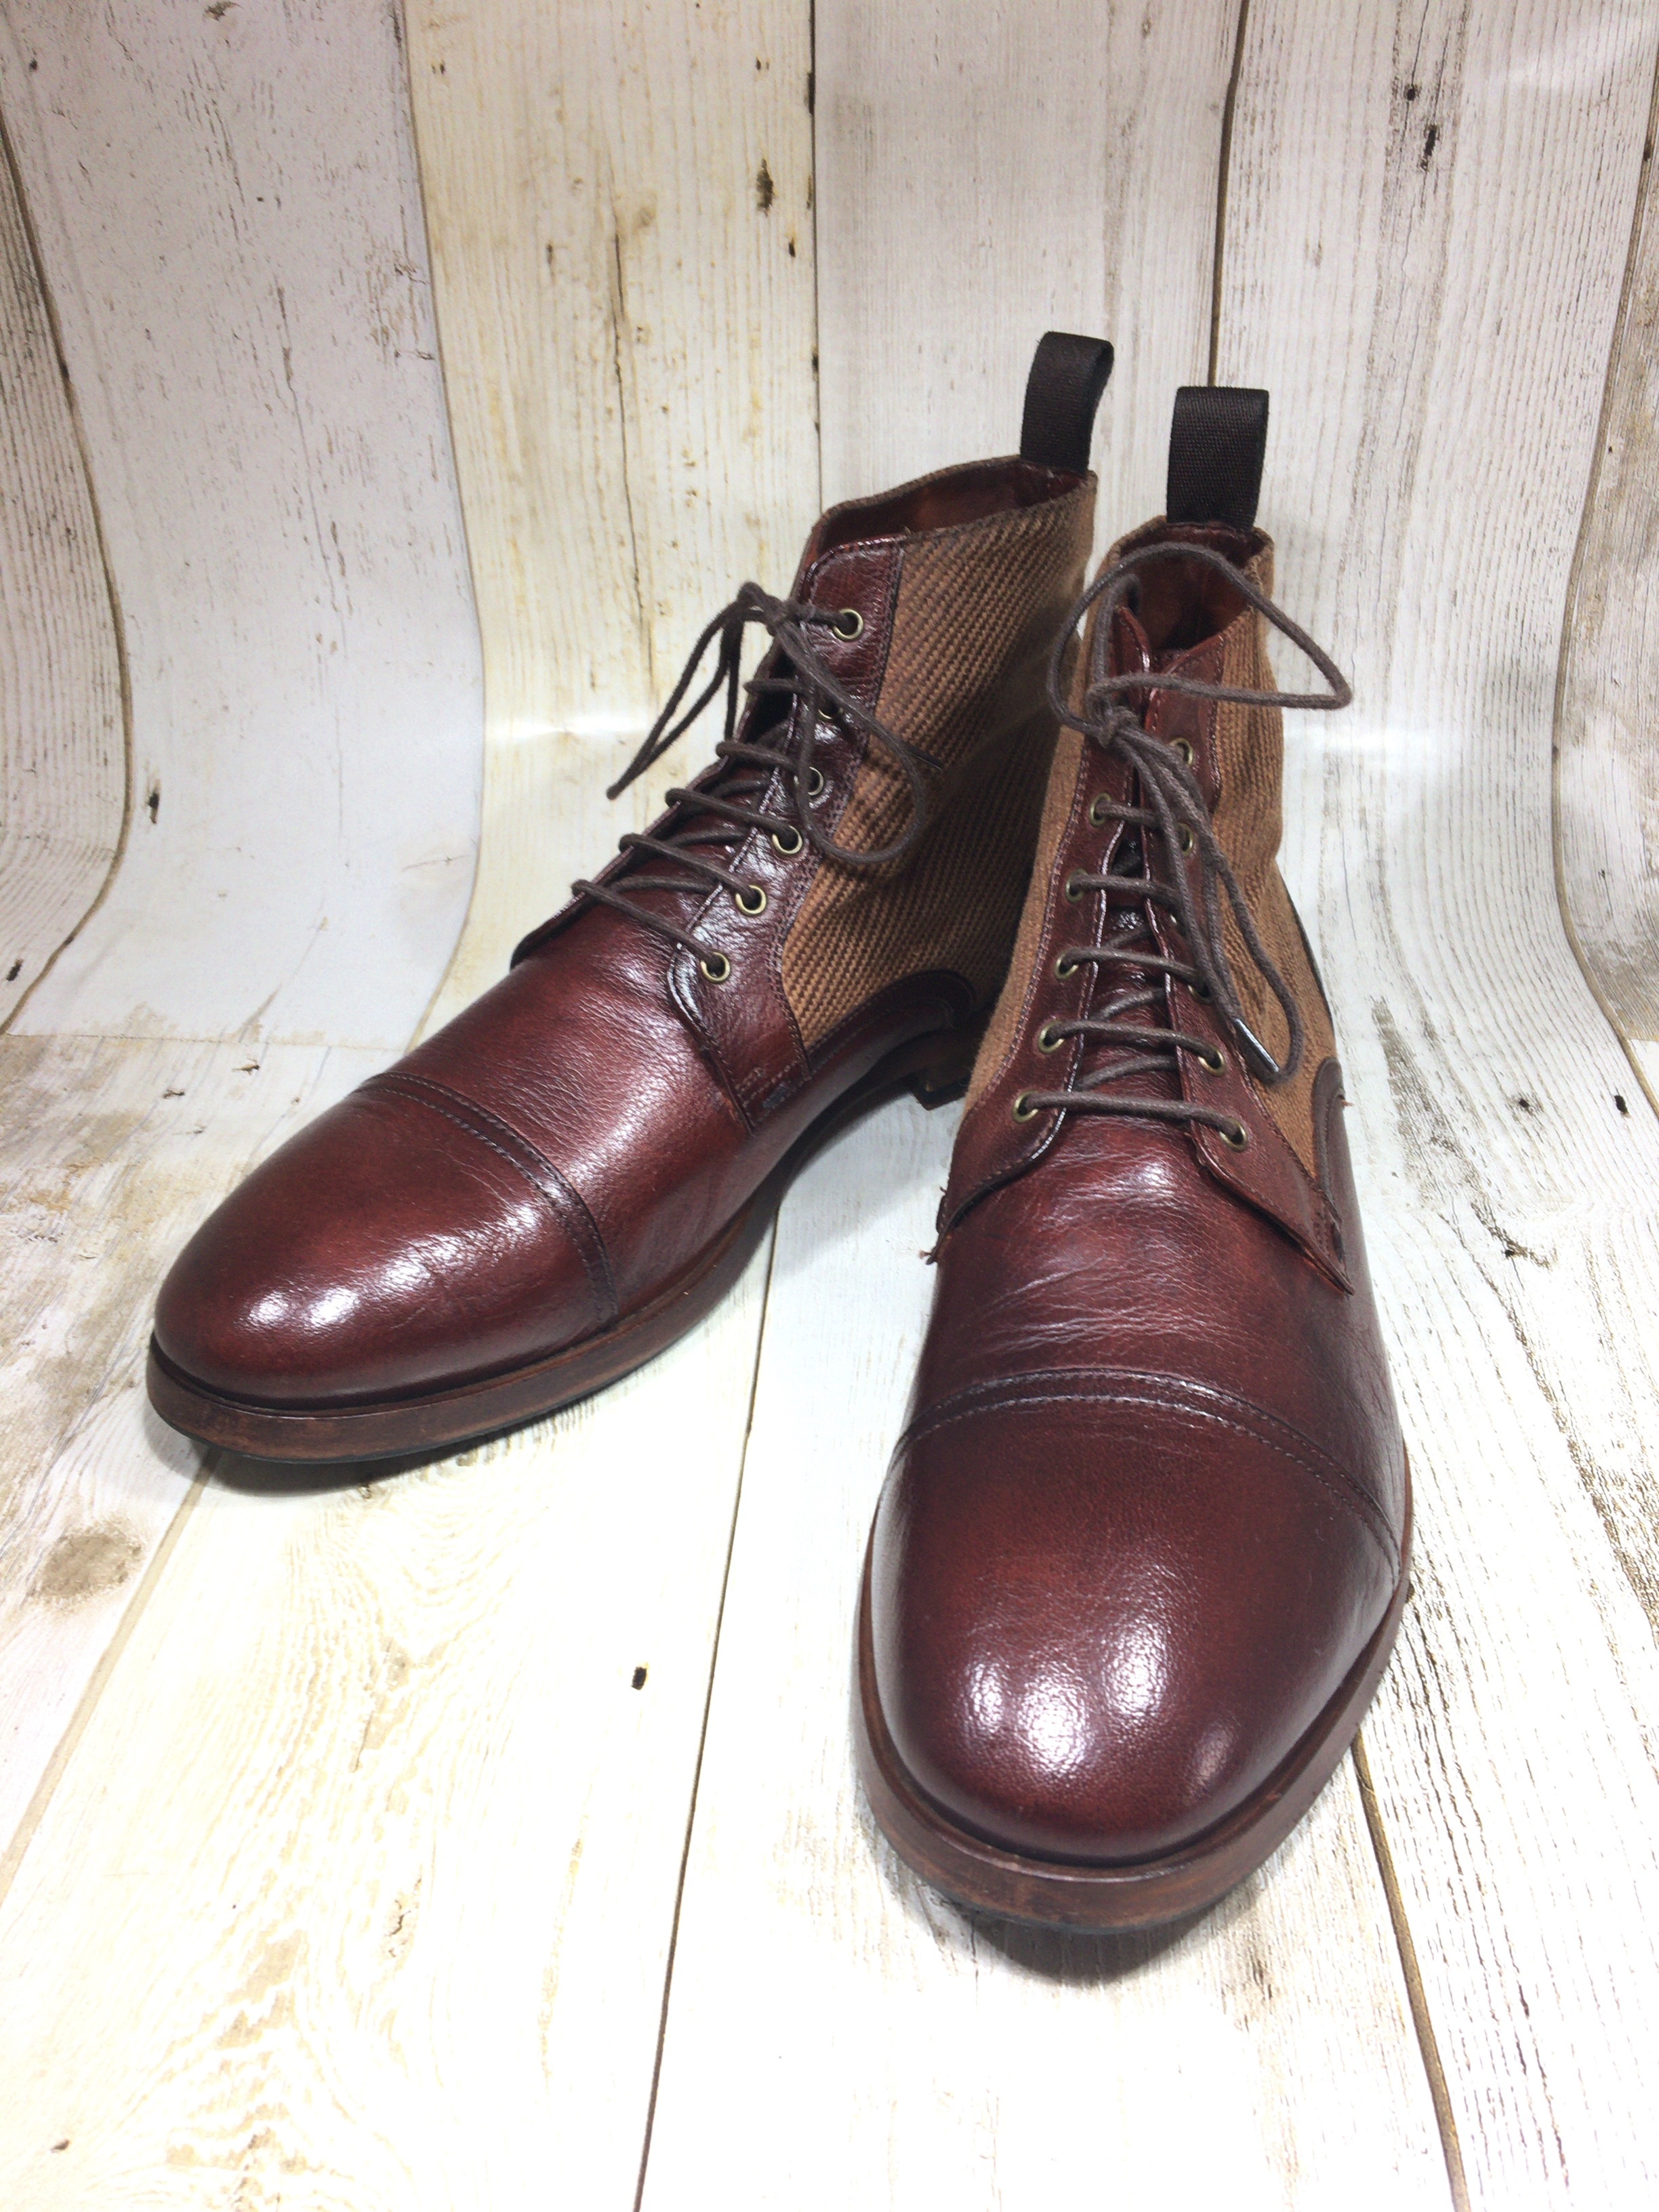 ポールスミス Paul smith ブーツ 26.5cm | 中古靴・革靴・ブーツ通販専門店 DafsMart ダフスマート Online Shop